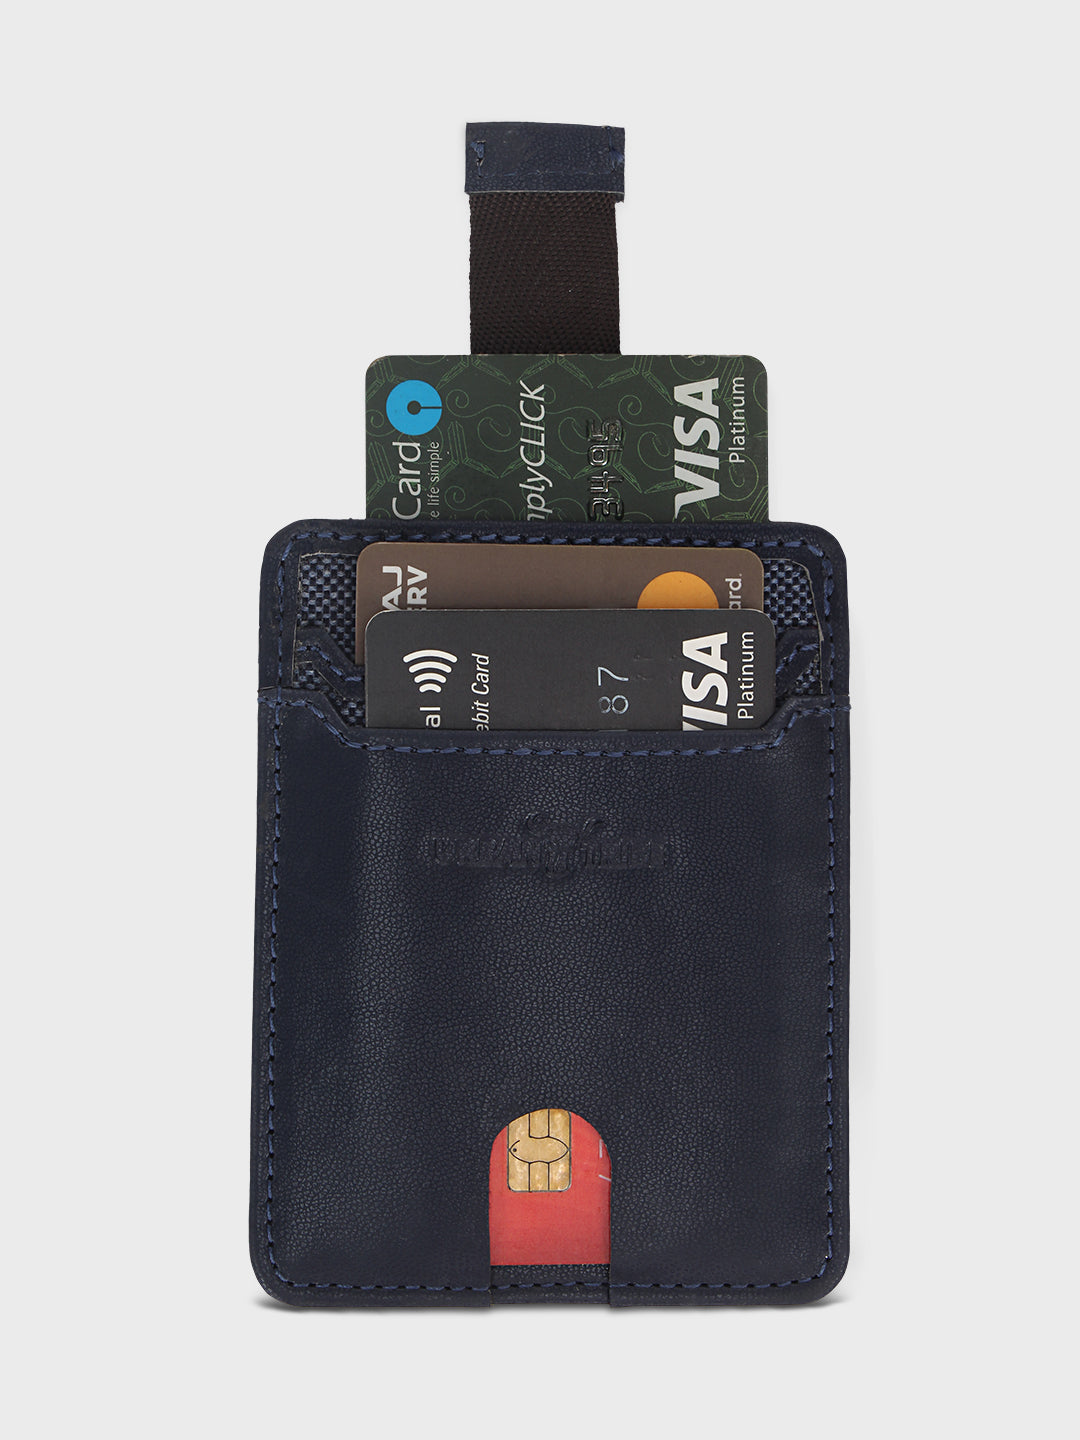 Mint Case- Card Holder